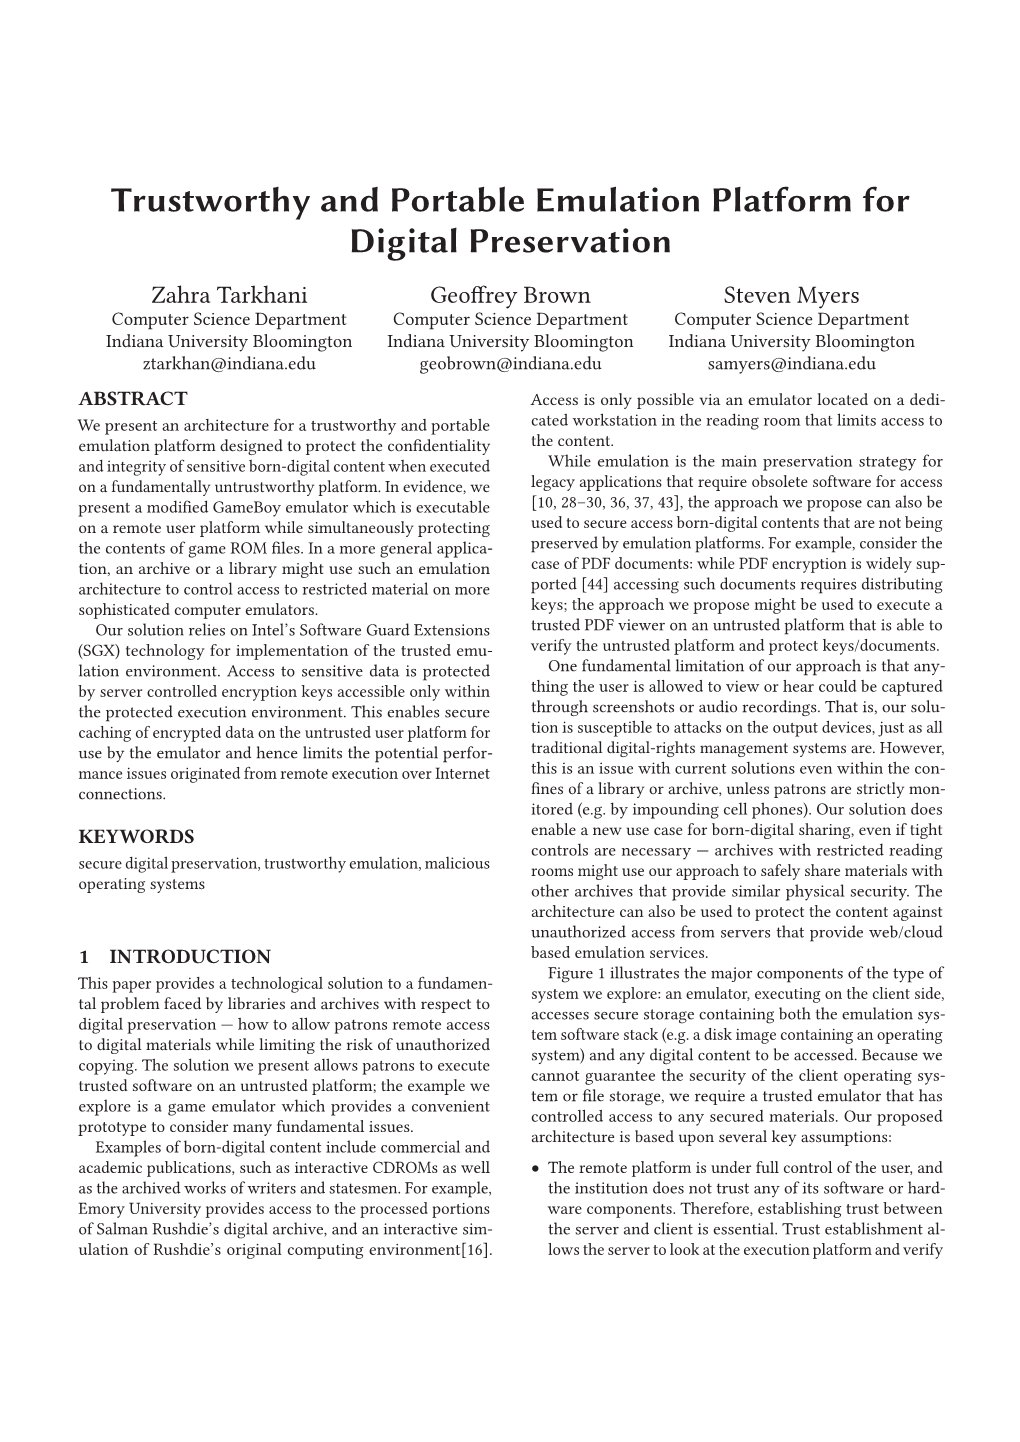 Trustworthy and Portable Emulation Platform for Digital Preservation